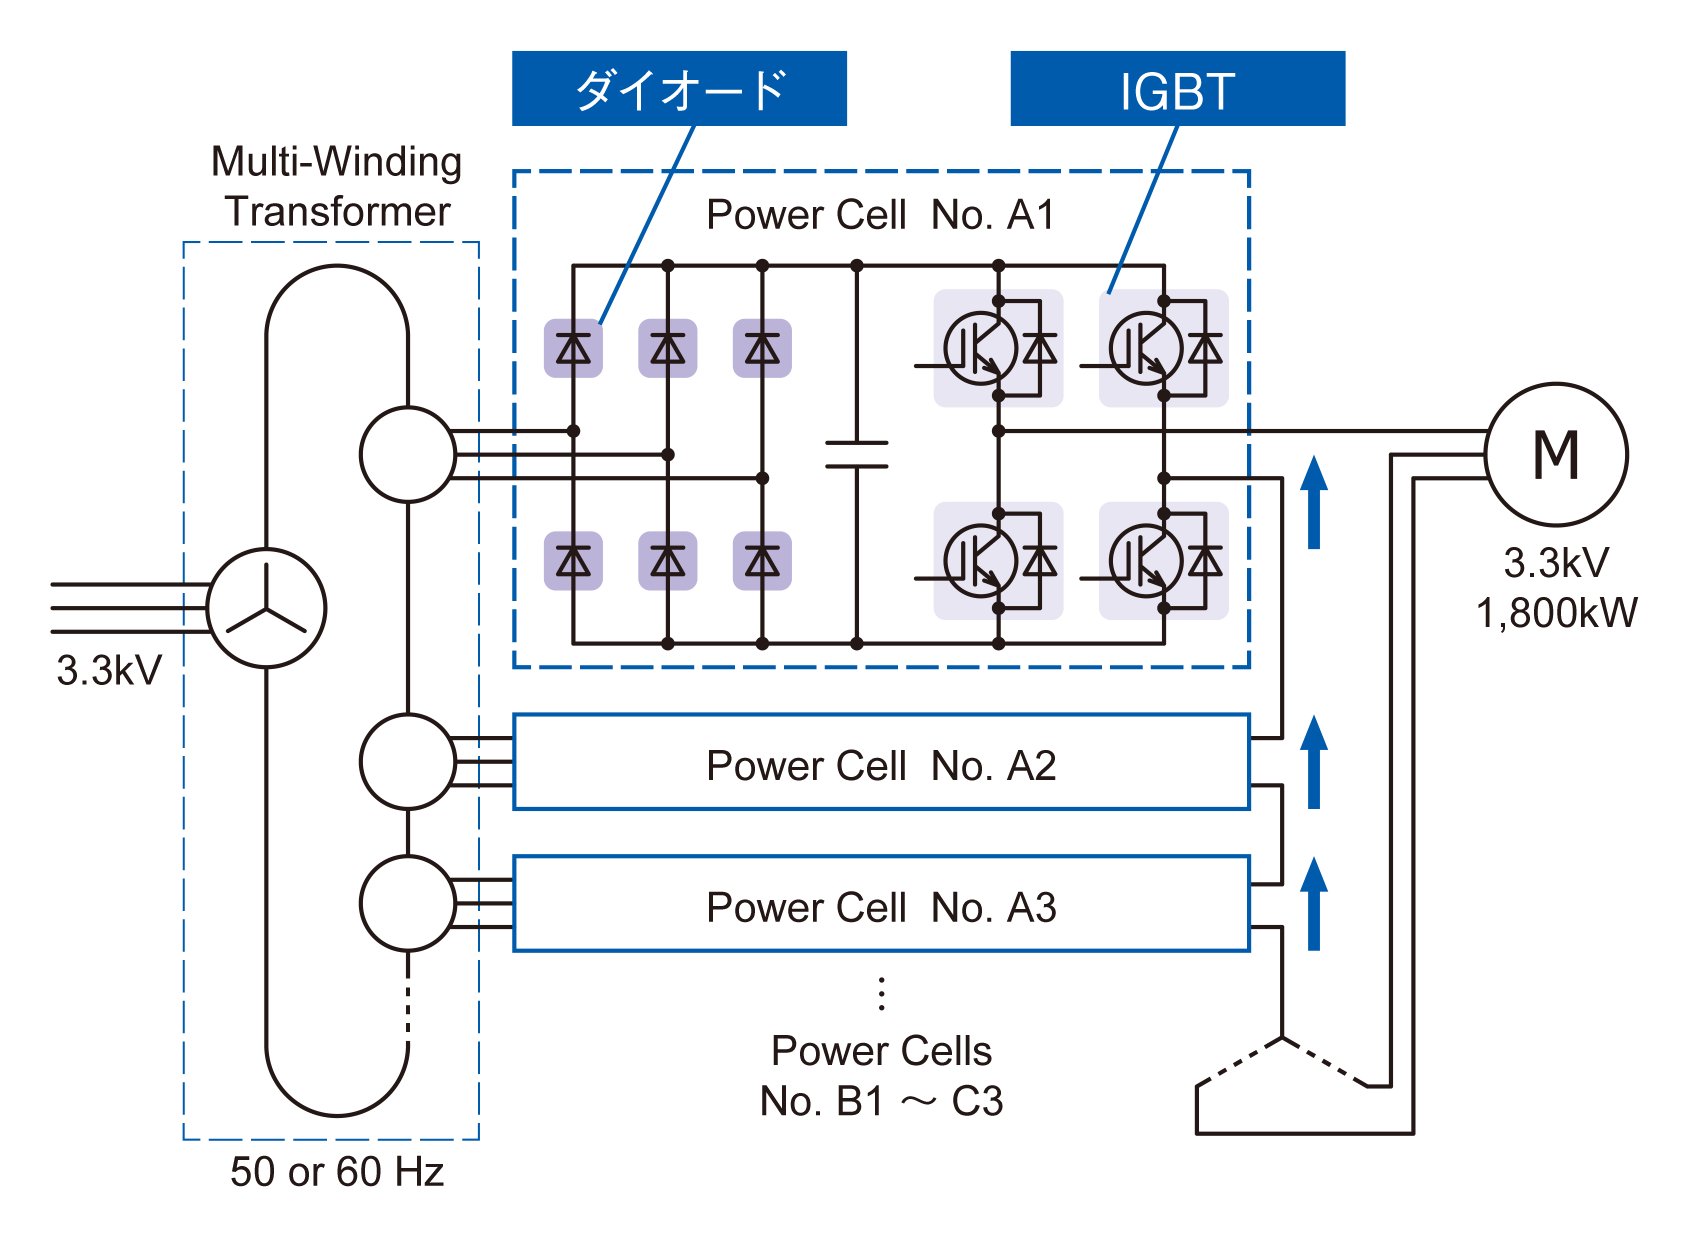 図1. Unit serial multi-level